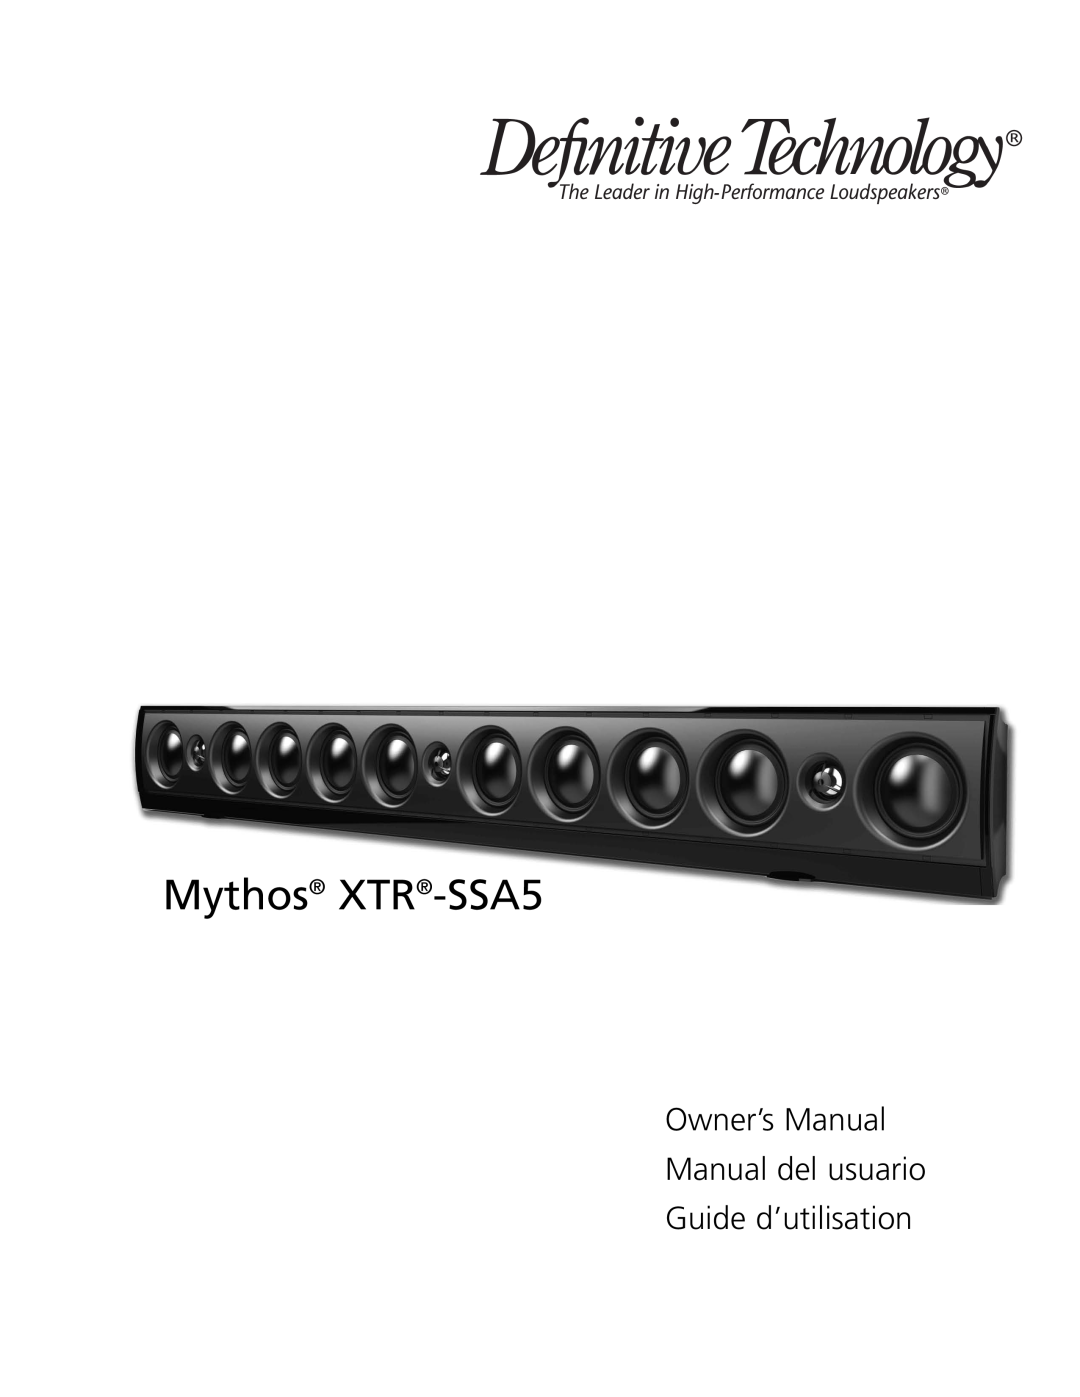 Definitive Technology owner manual Mythos XTR-SSA5, Guide d’utilisation 